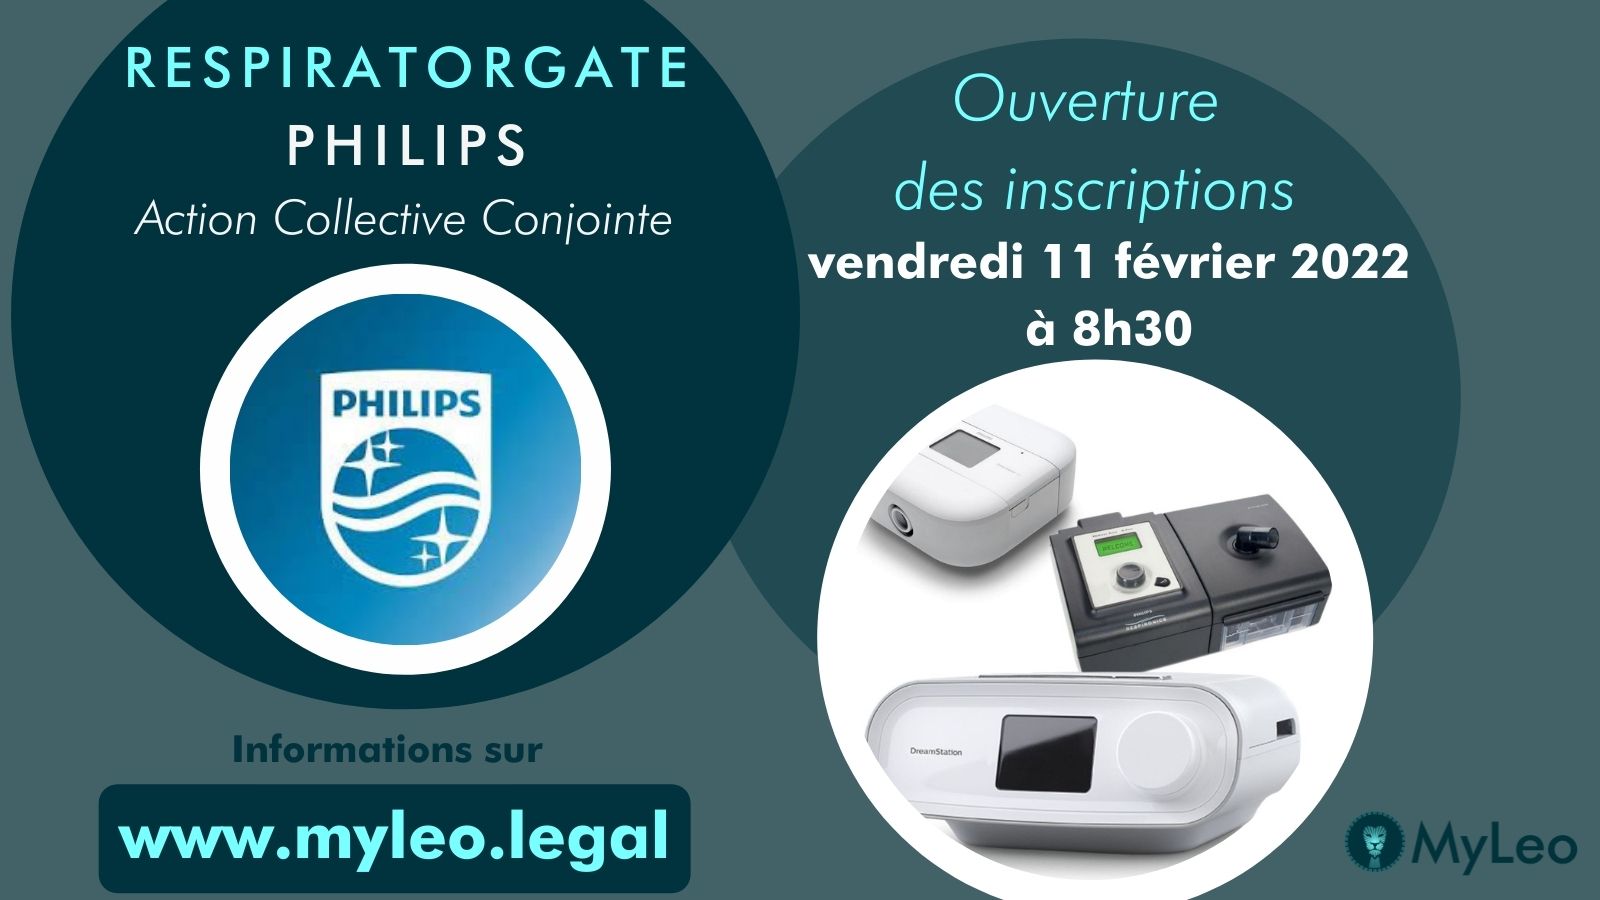 #Respiratorgate #PHILIPS : [Podcast] Rencontre avec "Mathieu" (16 février 2022)